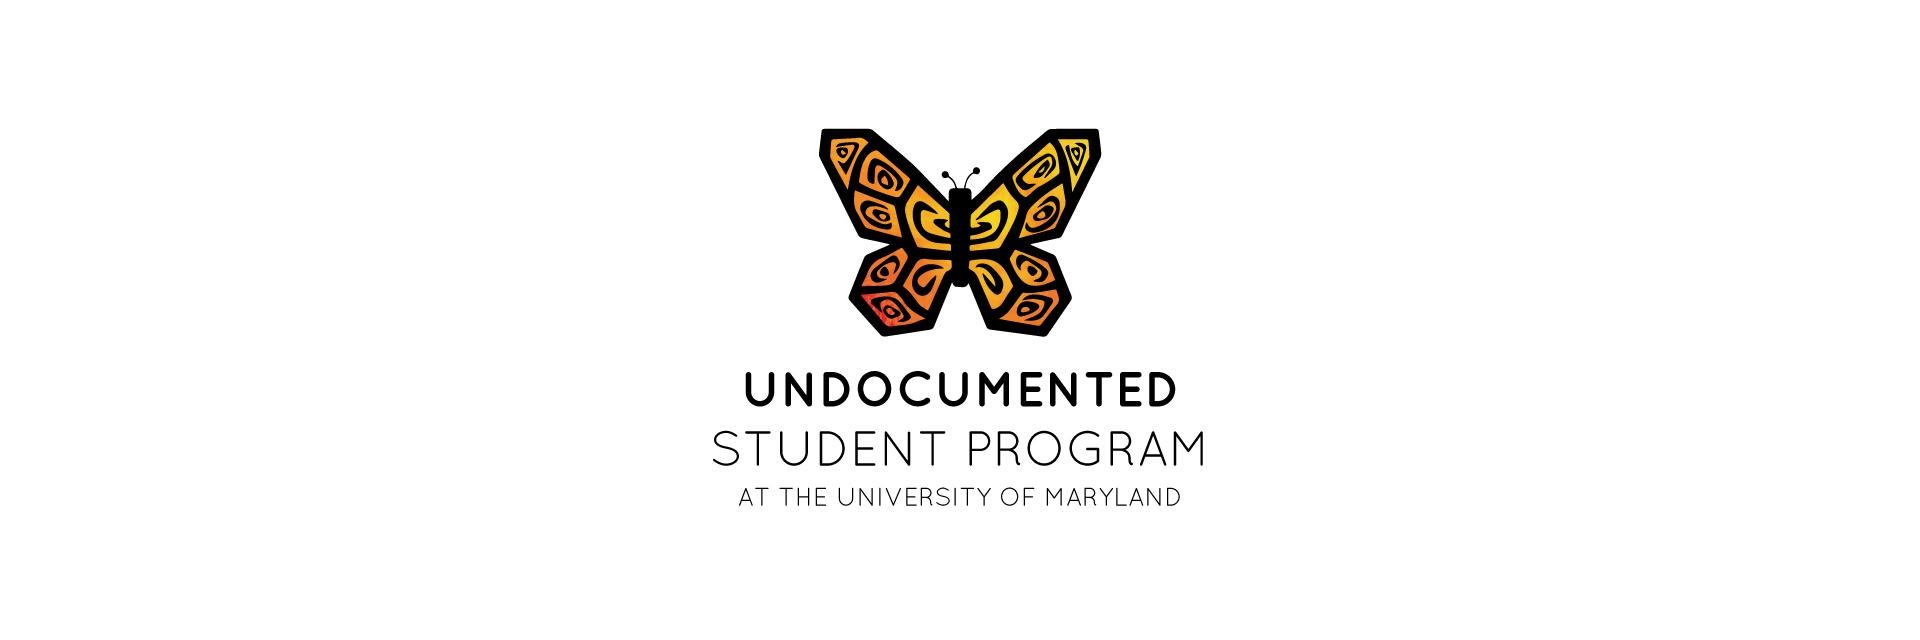 Undocumented Student Program at the University of Maryland